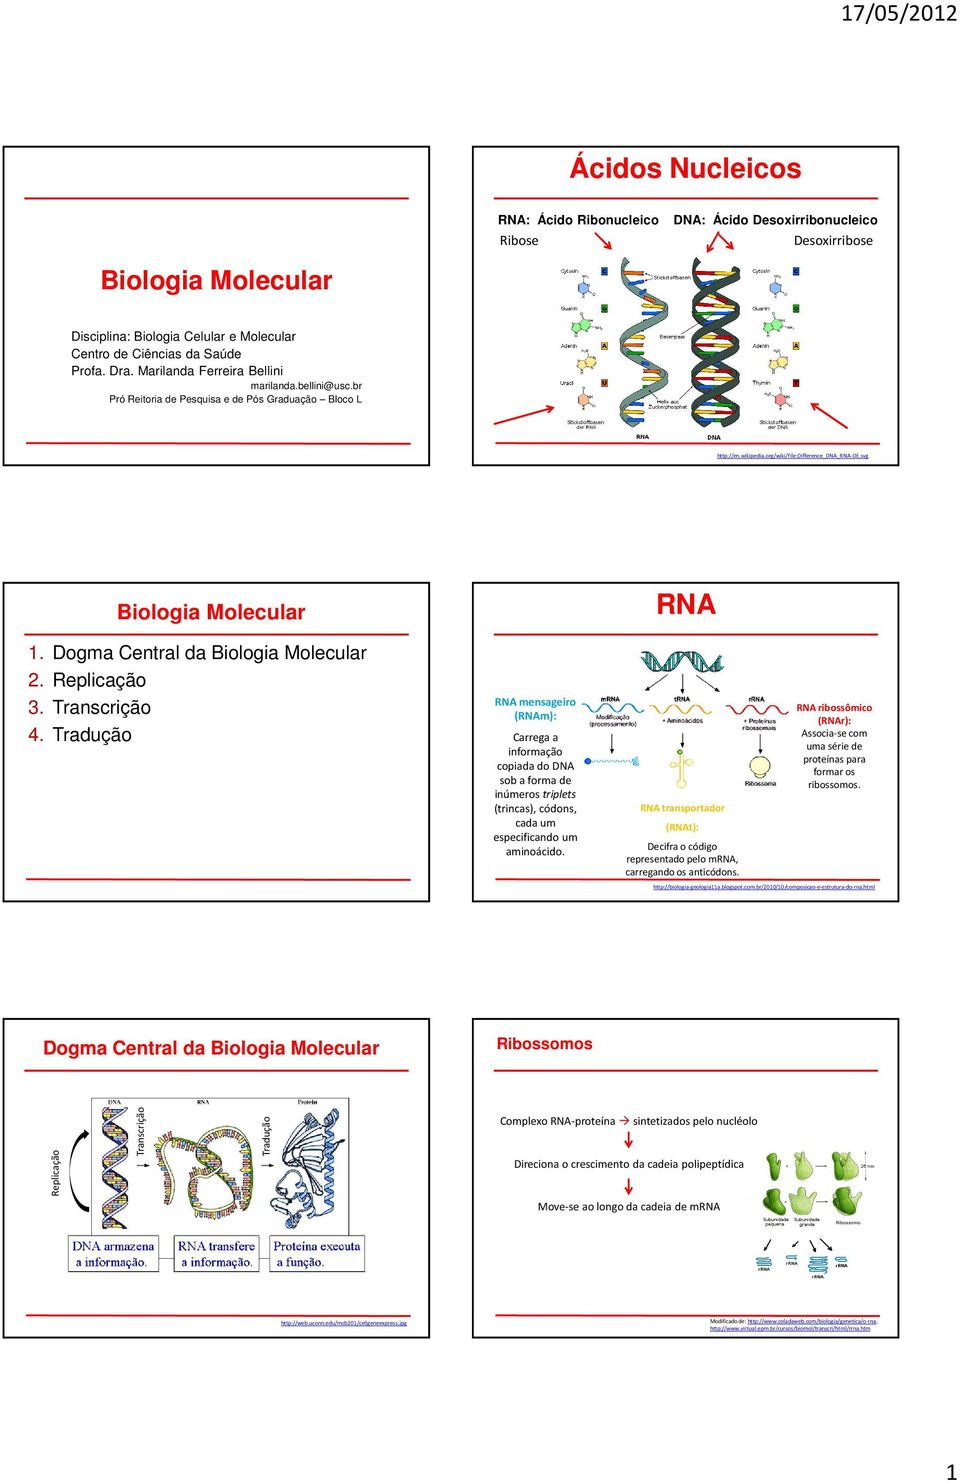 Dogma Central da Biologia Molecular 2. 3. 4. Tradução RN mensageiro (RNm): Carrega a informação copiada do DN sob a forma de inúmeros triplets (trincas), códons, cada um especificando um aminoácido.